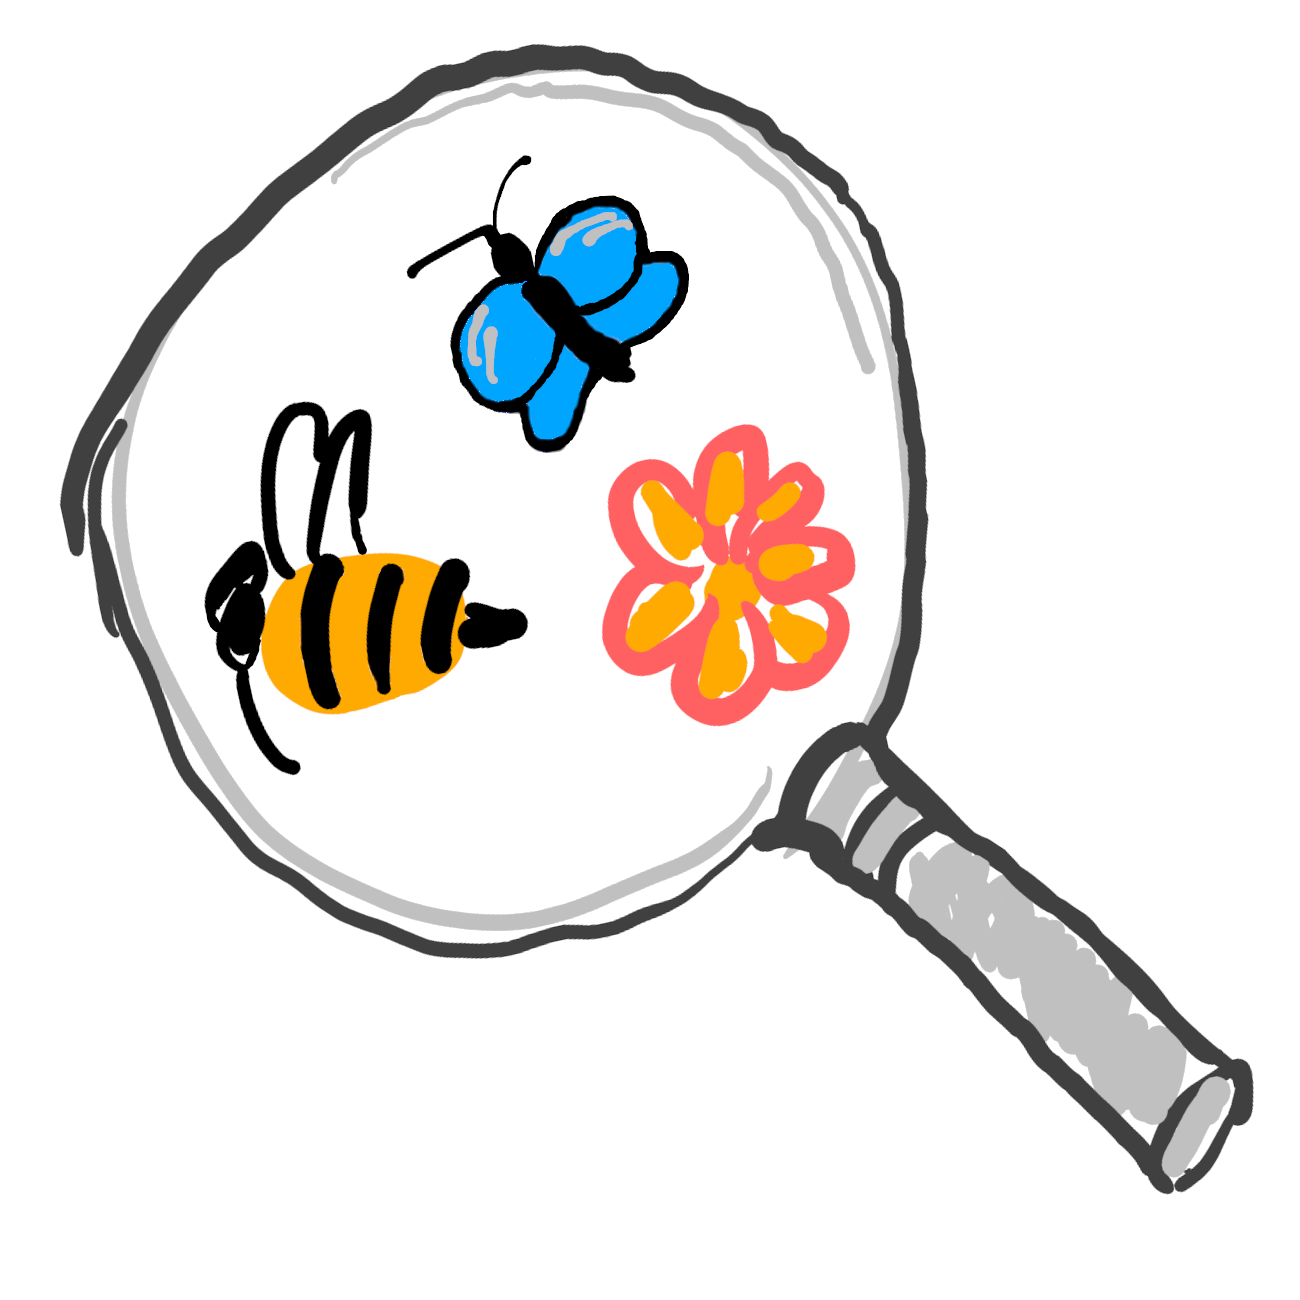 szerző: szv, forrás: pollinator-monitoring.hu/